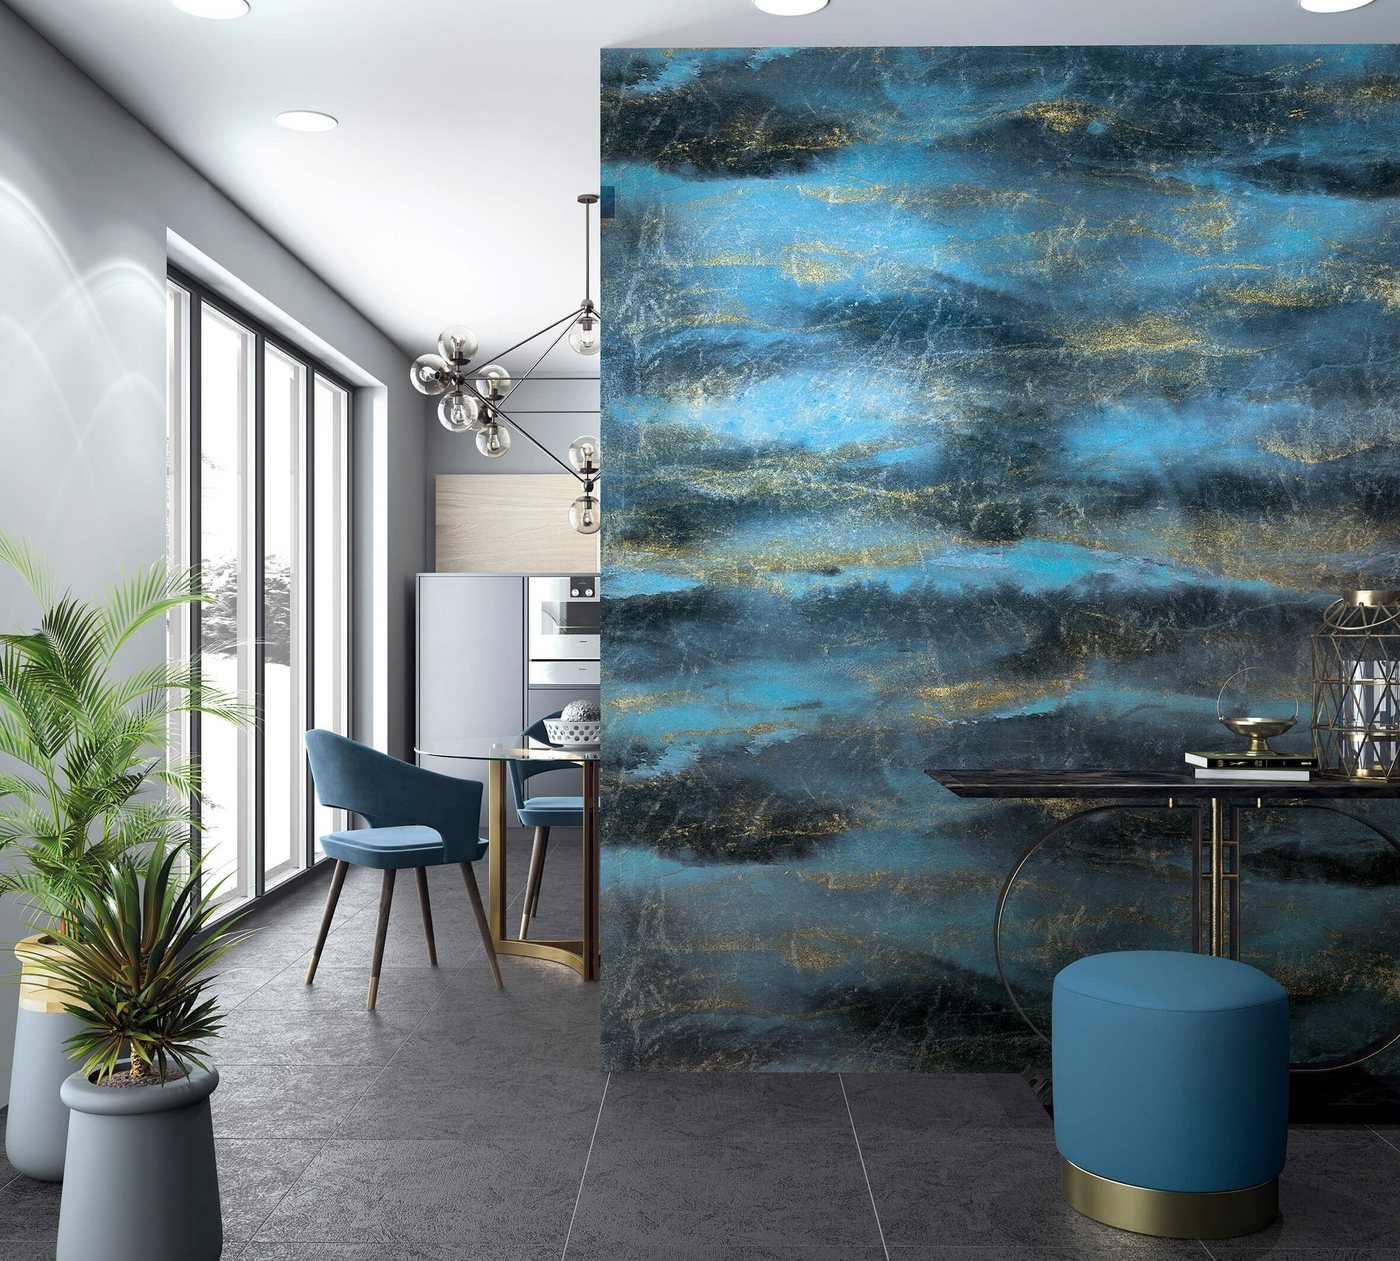 Newroom Vliestapete, [ 2,7 x 2,12m ] großzügiges Motiv - kein wiederkehrendes Muster - nahtlos große Flächen möglich - Fototapete Wandbild Muster Wellen Blitze Made in Germany von Newroom